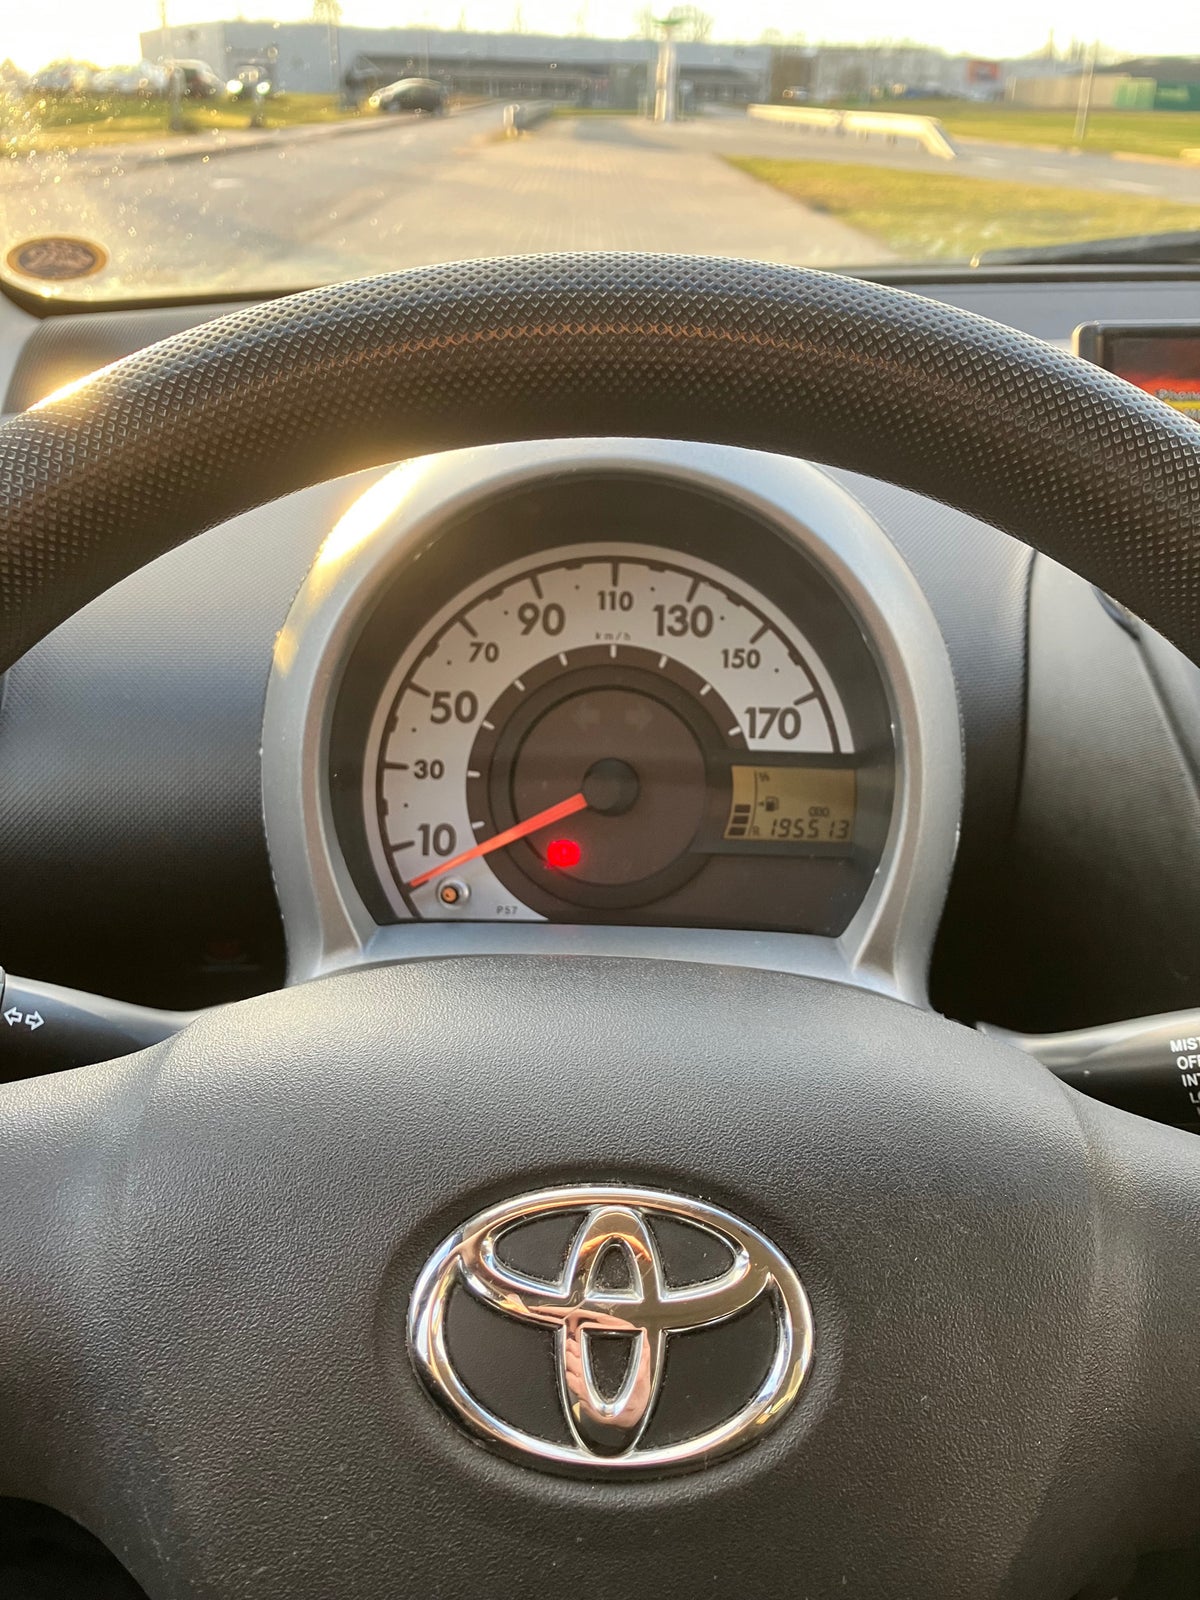 Toyota Aygo, 1,0, Benzin